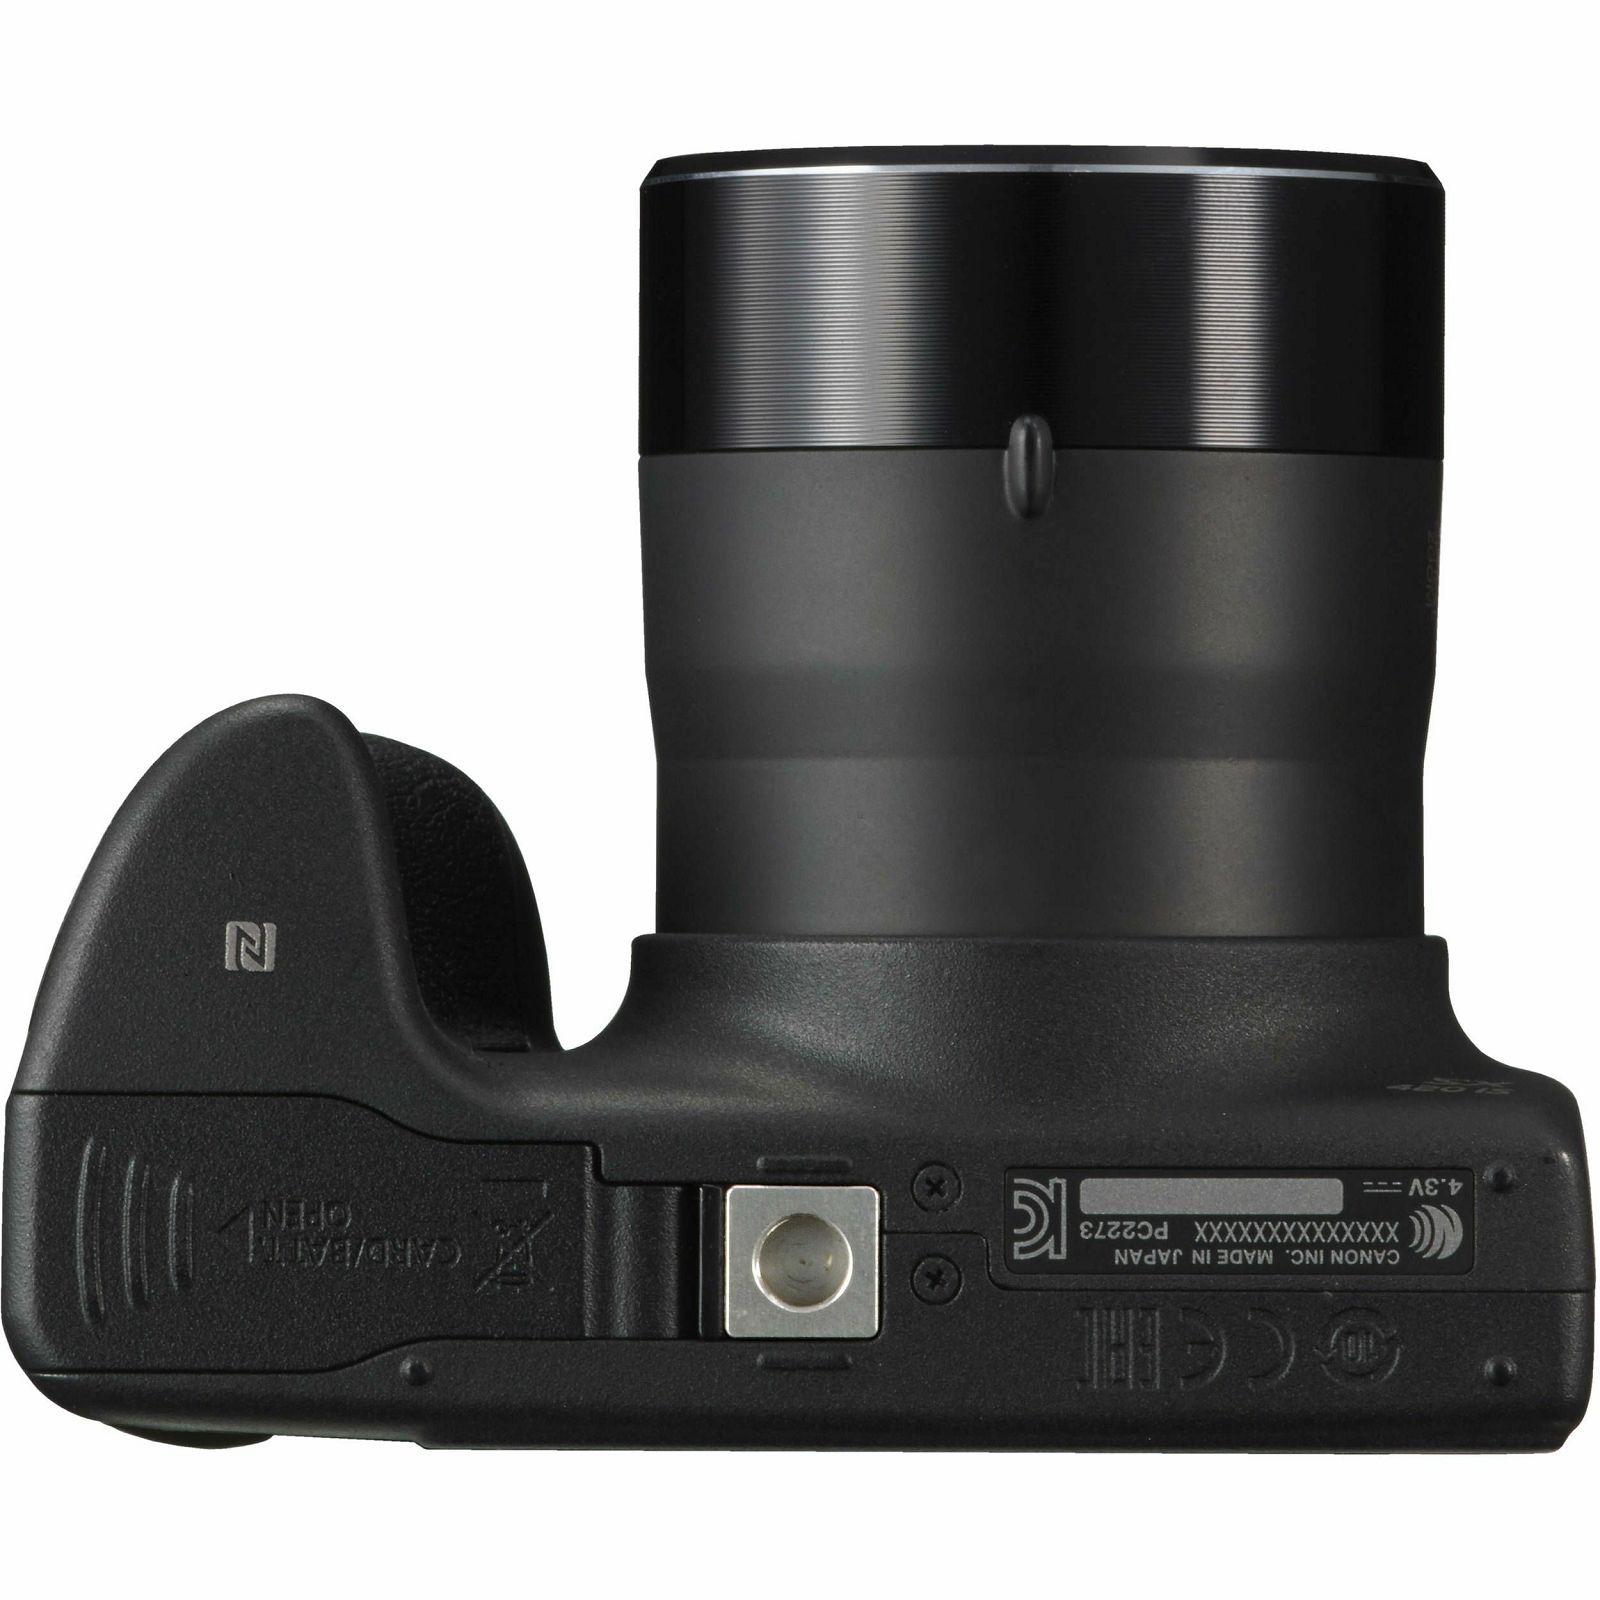 Canon Powershot SX430 IS 45x Zoom Black crni digitalni kompaktni fotoaparat SX430IS (1790C002AA)